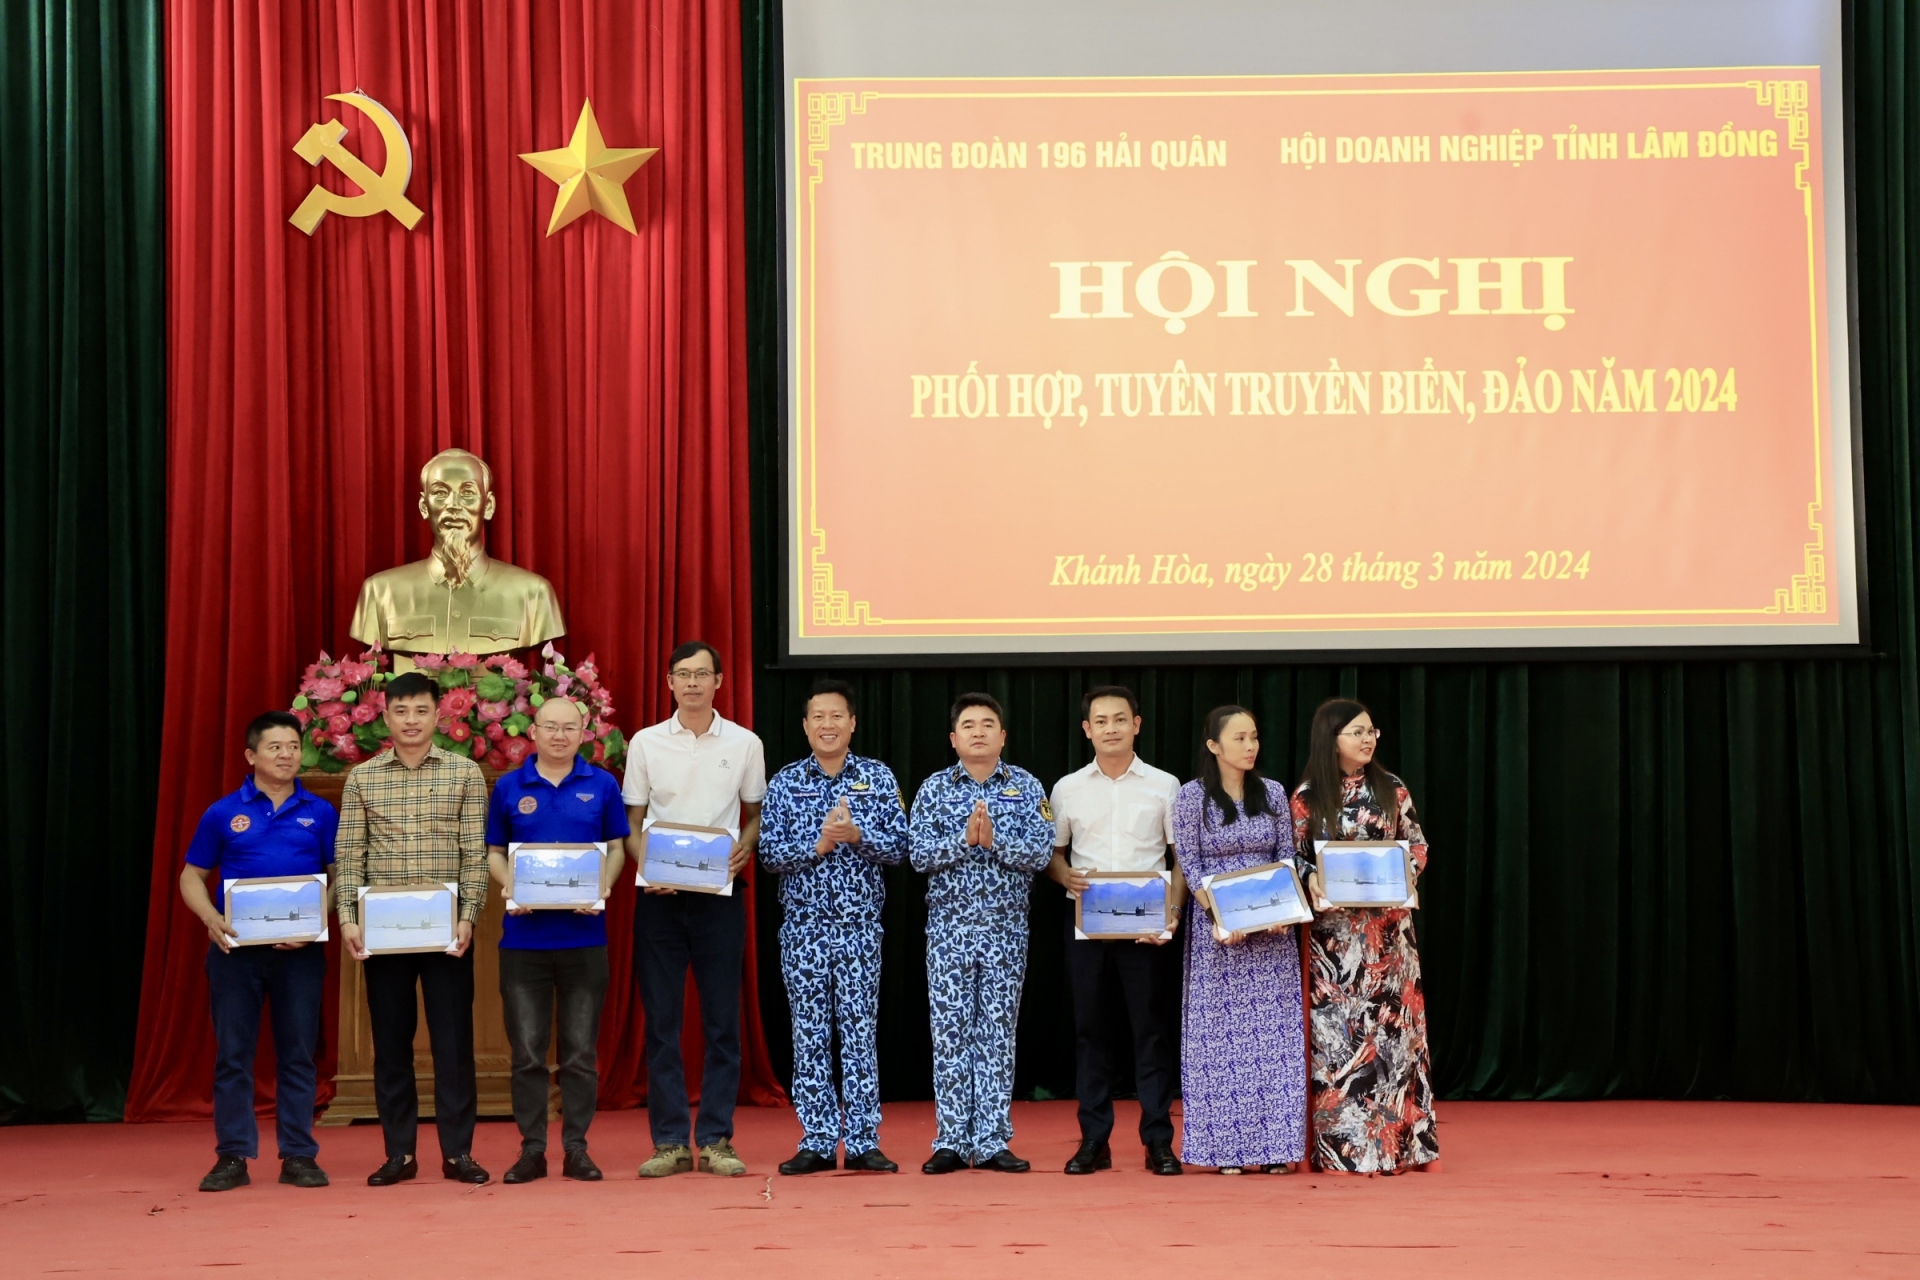  Đoàn công tác tỉnh Lâm Đồng nhận quà tặng từ lãnh đạo Trung đoàn tàu ngầm 196 Hải quân